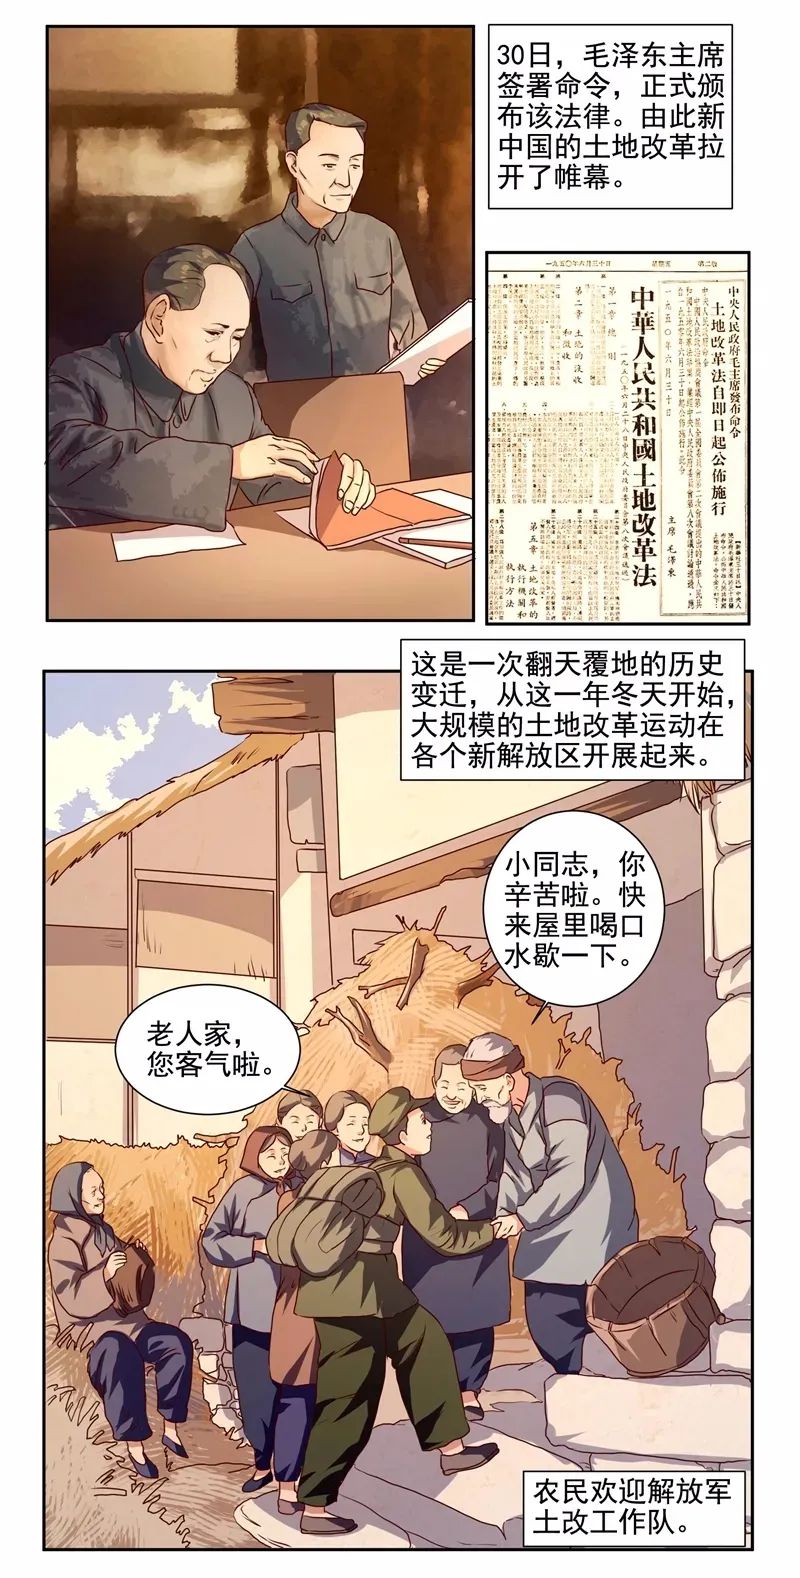 【兰法四史学习之"新中国史"】漫画|土地革命